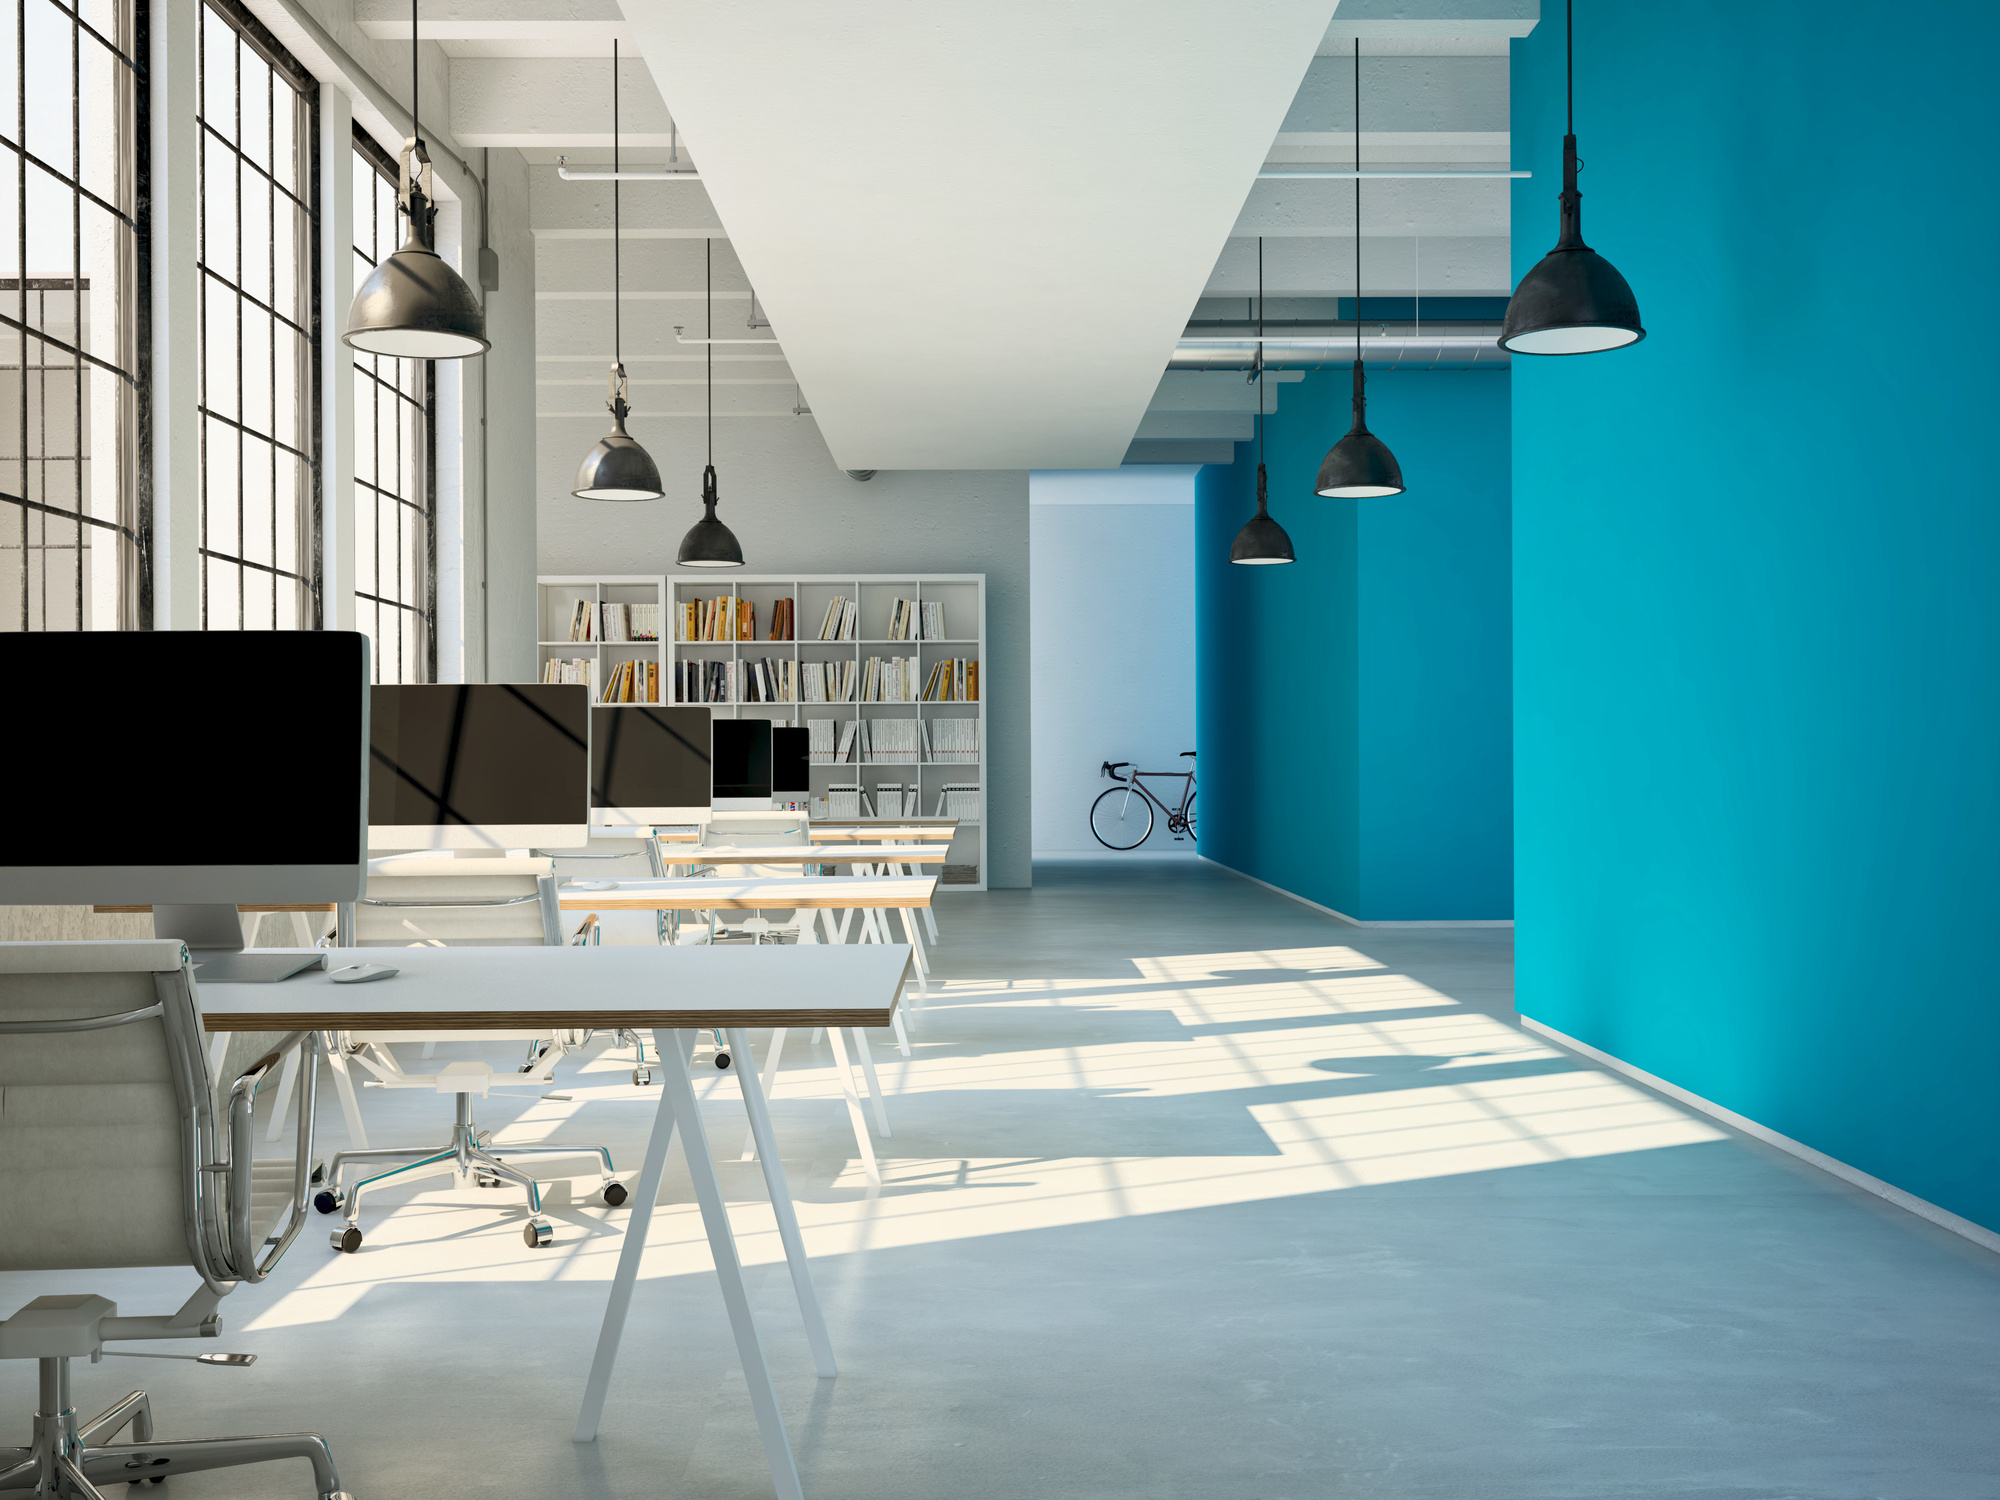 As cores quebram a formalidade de ambientes de trabalho e permitem espaços mais aconchegantes e propícios para o estimulo da criatividade.